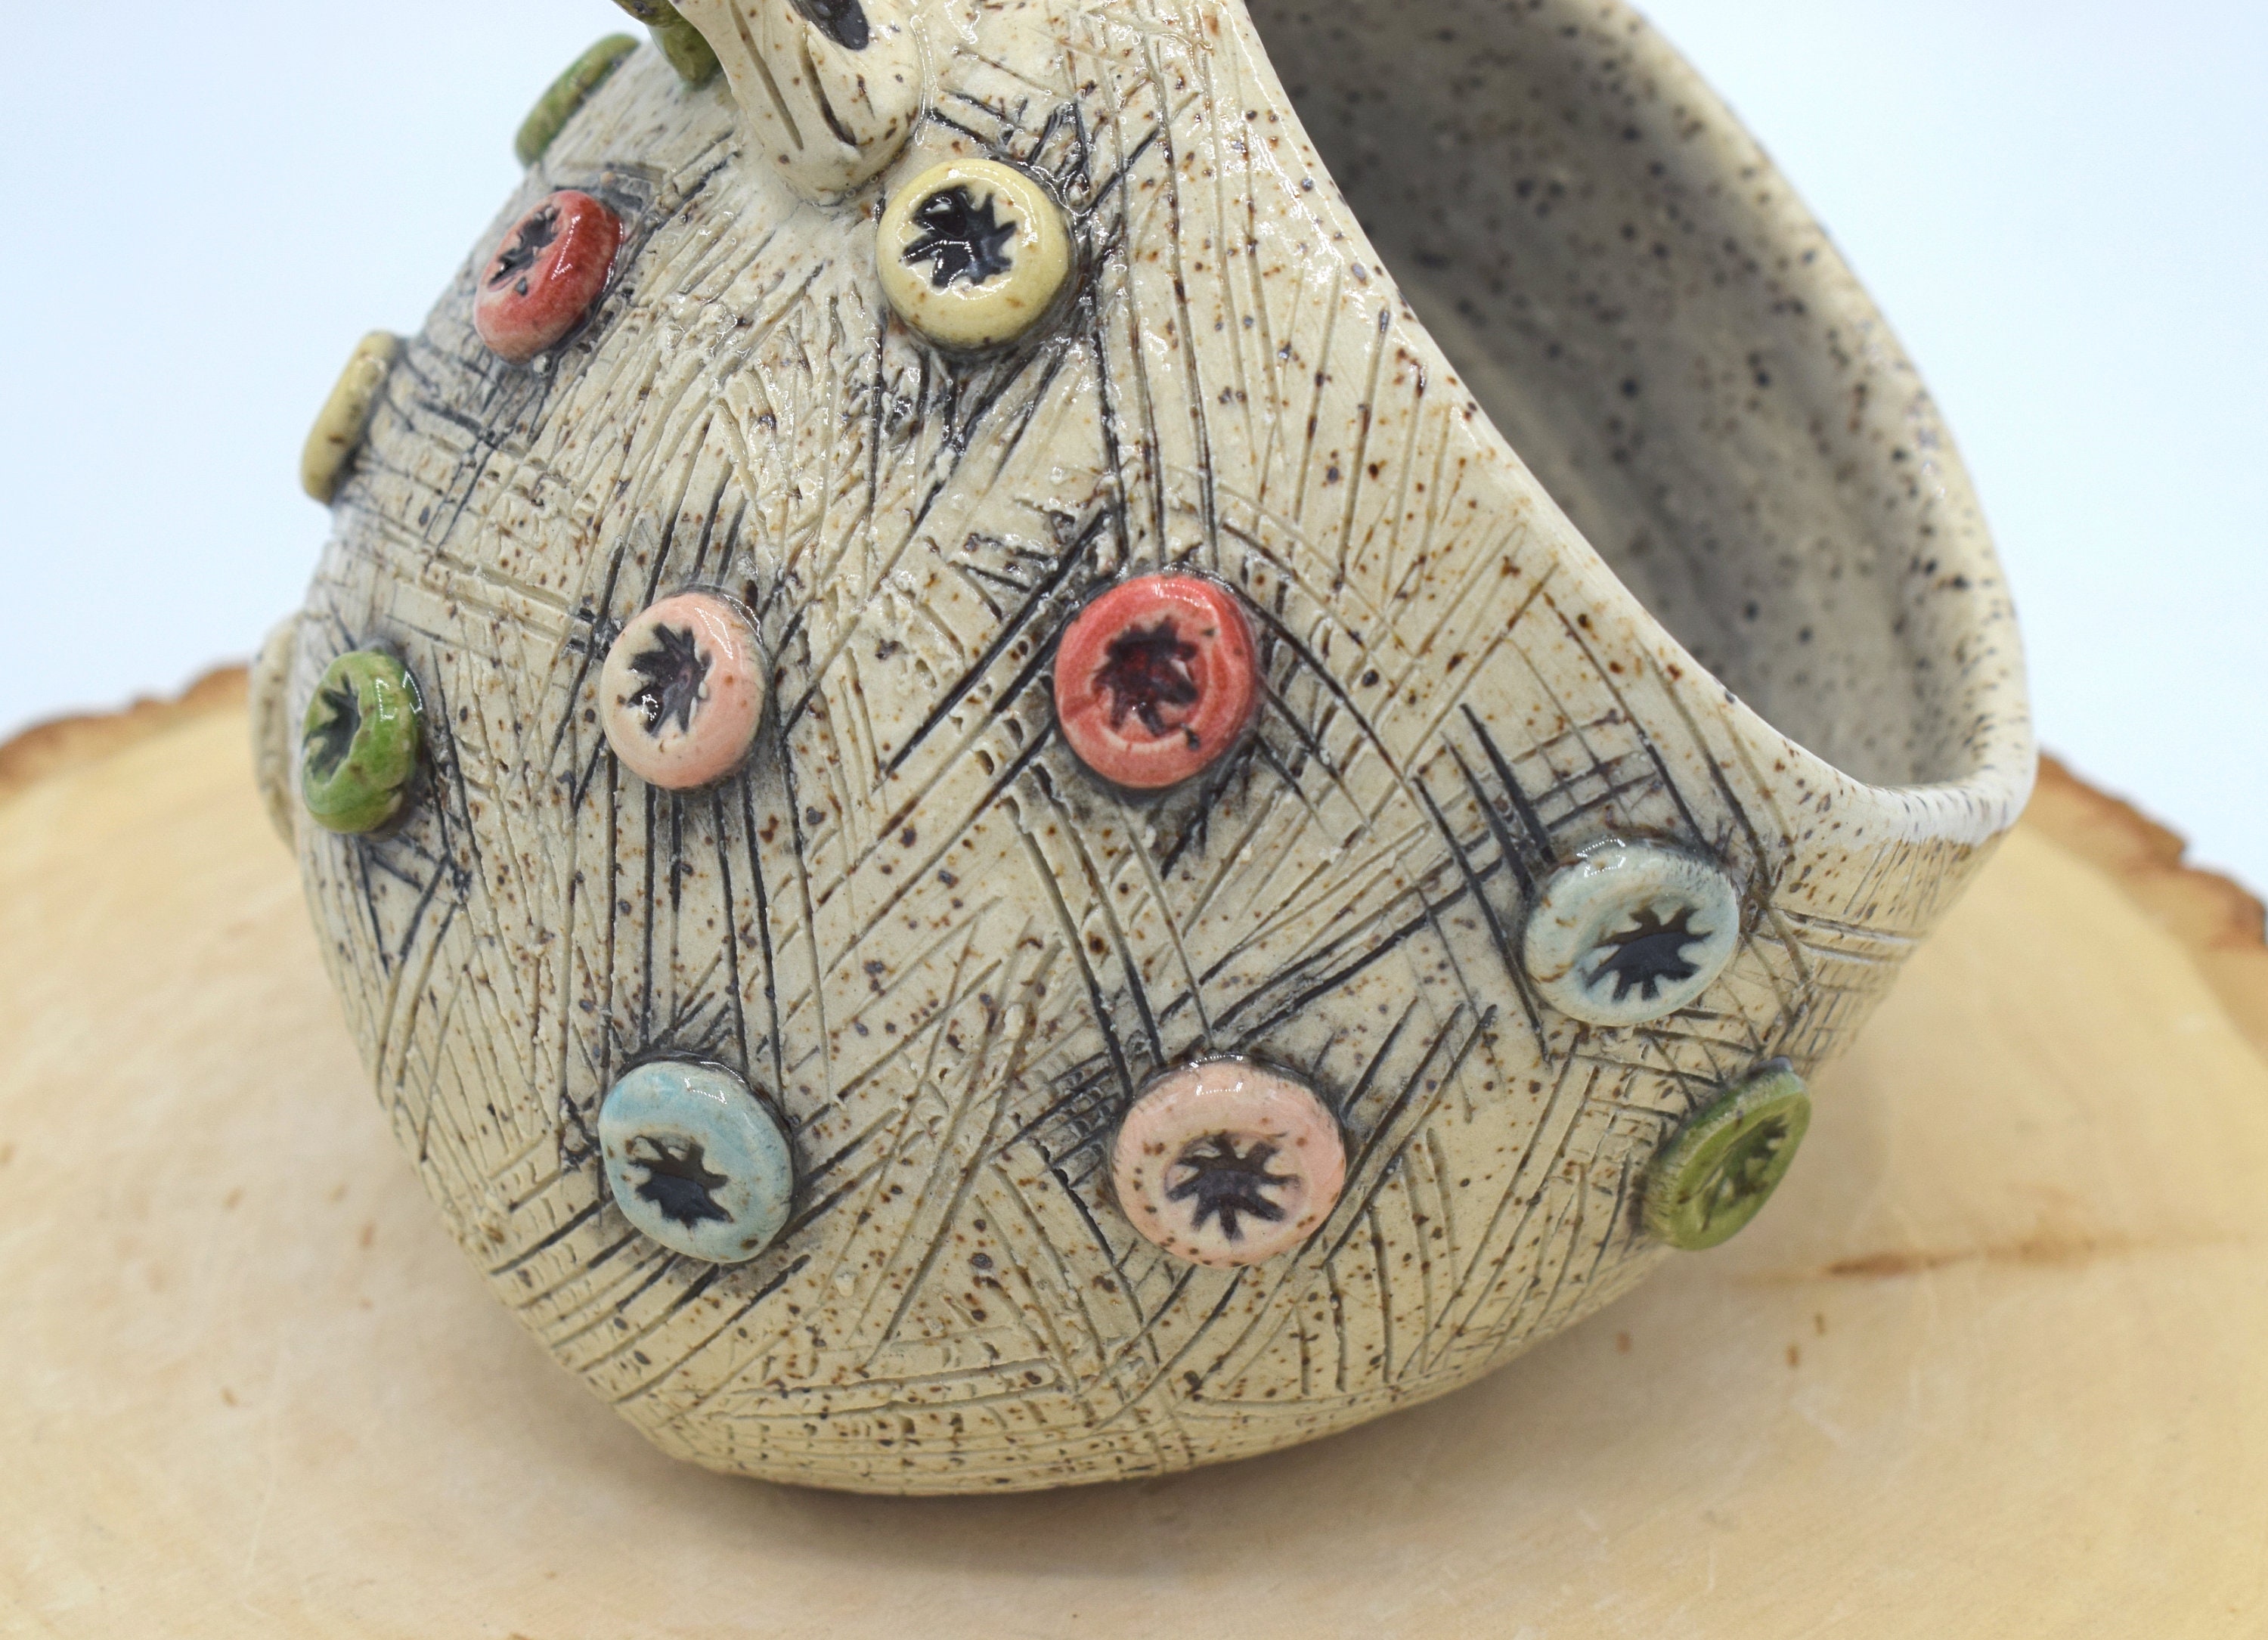 Ceramic Sponge Holder - Handmade Gifts & Local Shopping In New